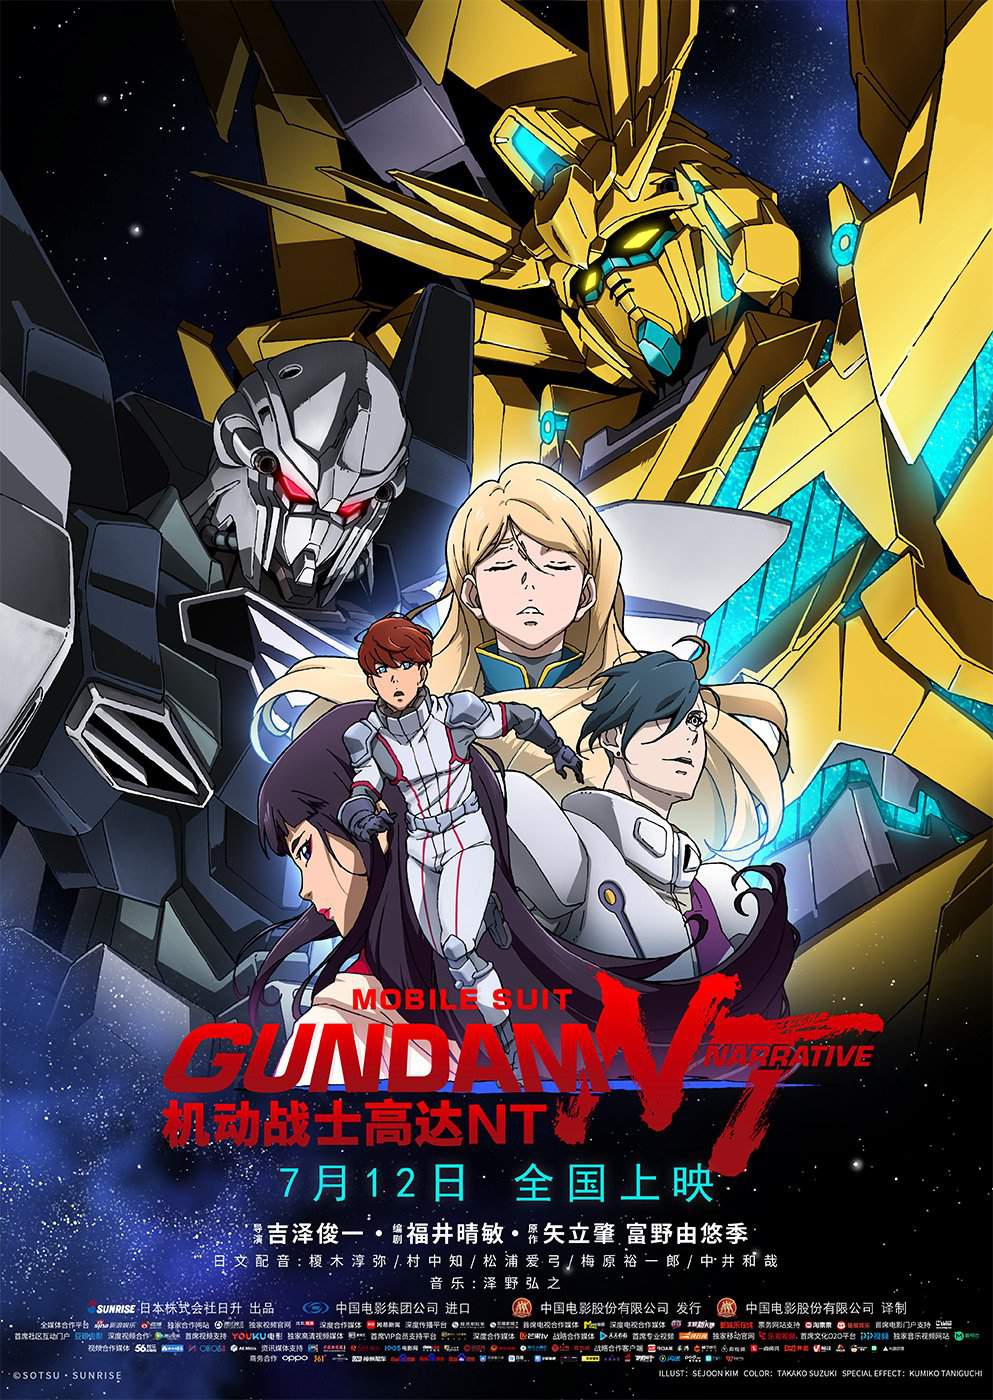 New Gundam Nt Wallpaper Found Online Gundam Amino